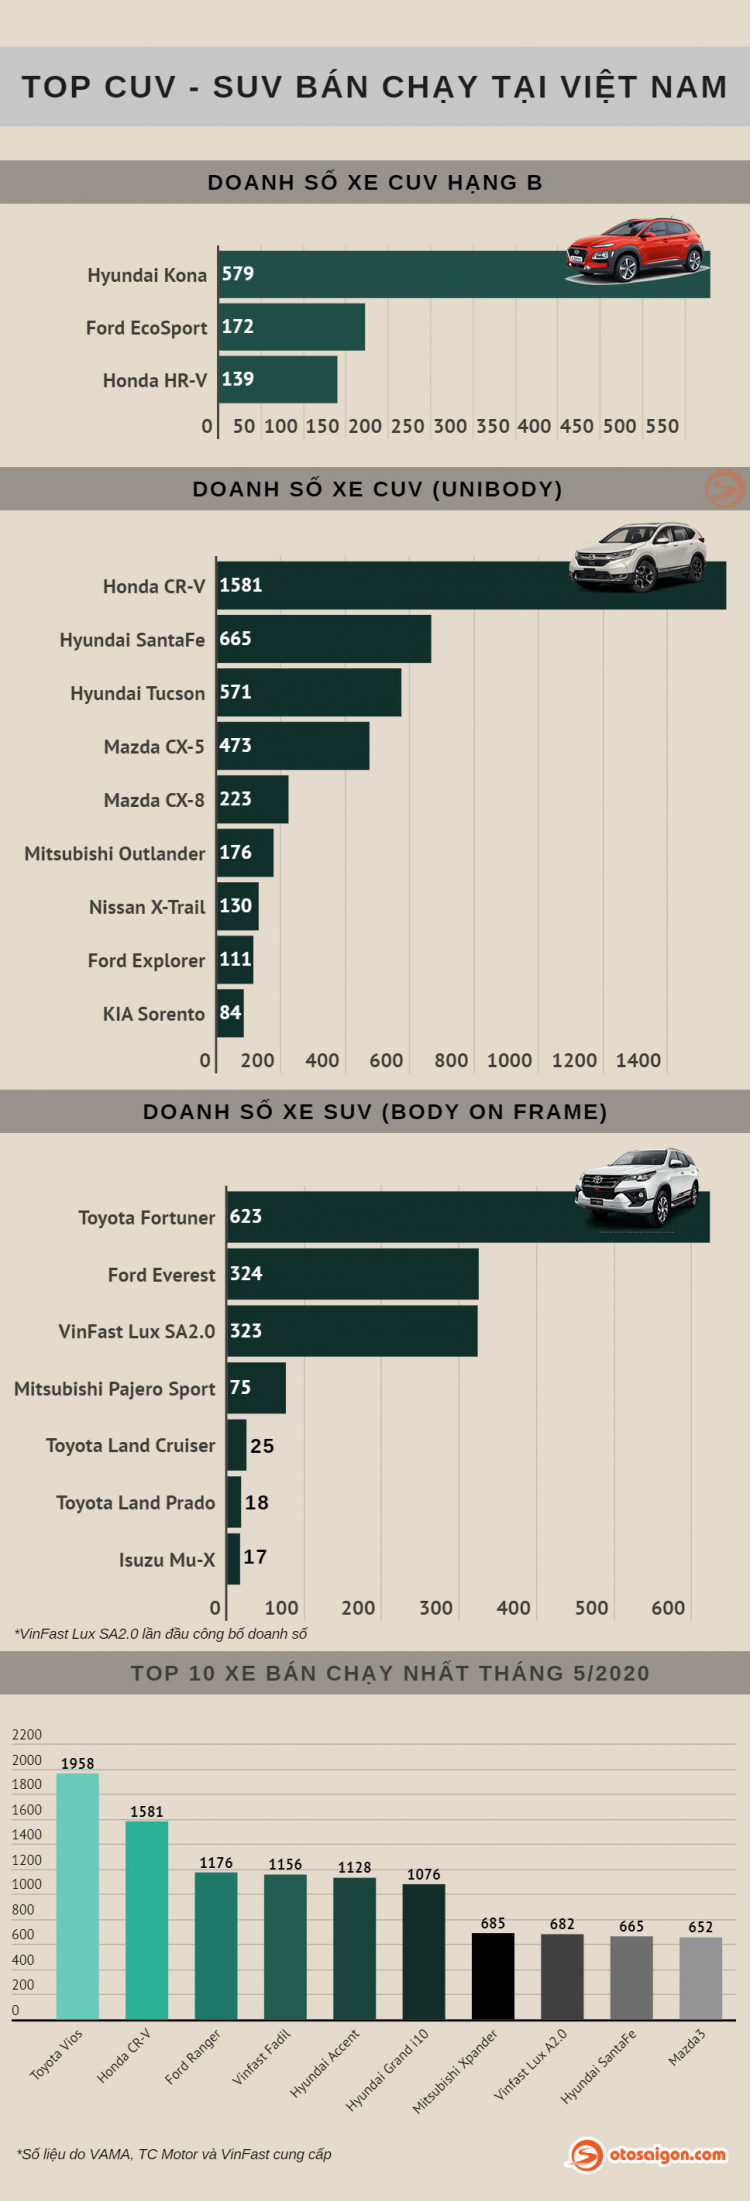 [Infographic] Top CUV-SUV bán chạy tại Việt Nam tháng 5/2020: Honda CR-V bất ngờ đứng đầu